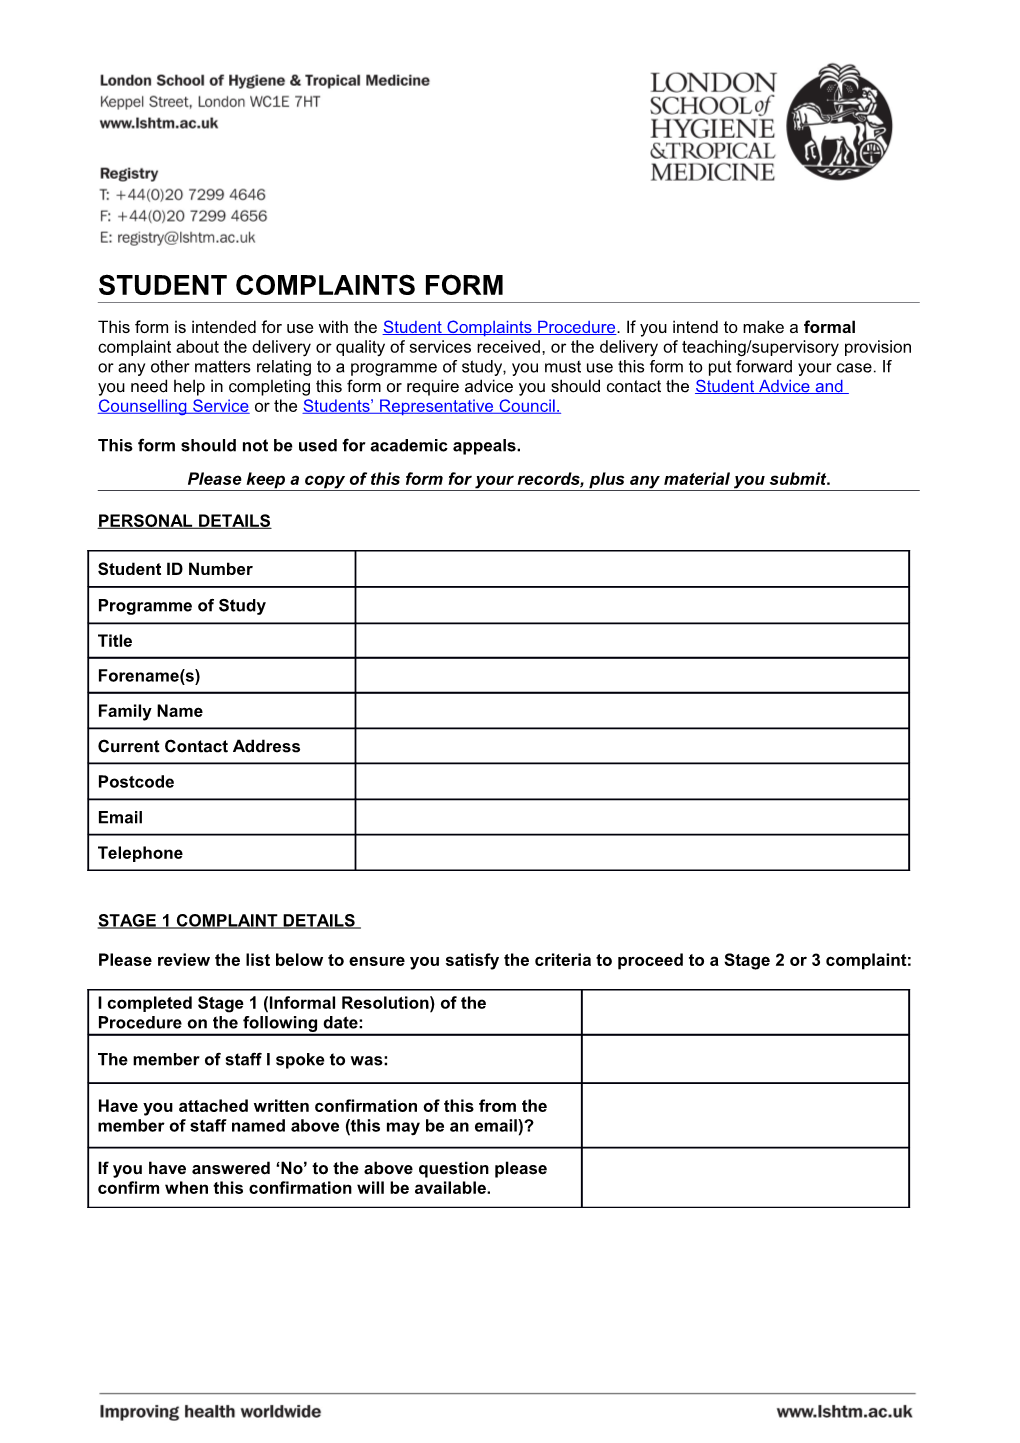 Student Complaints Form